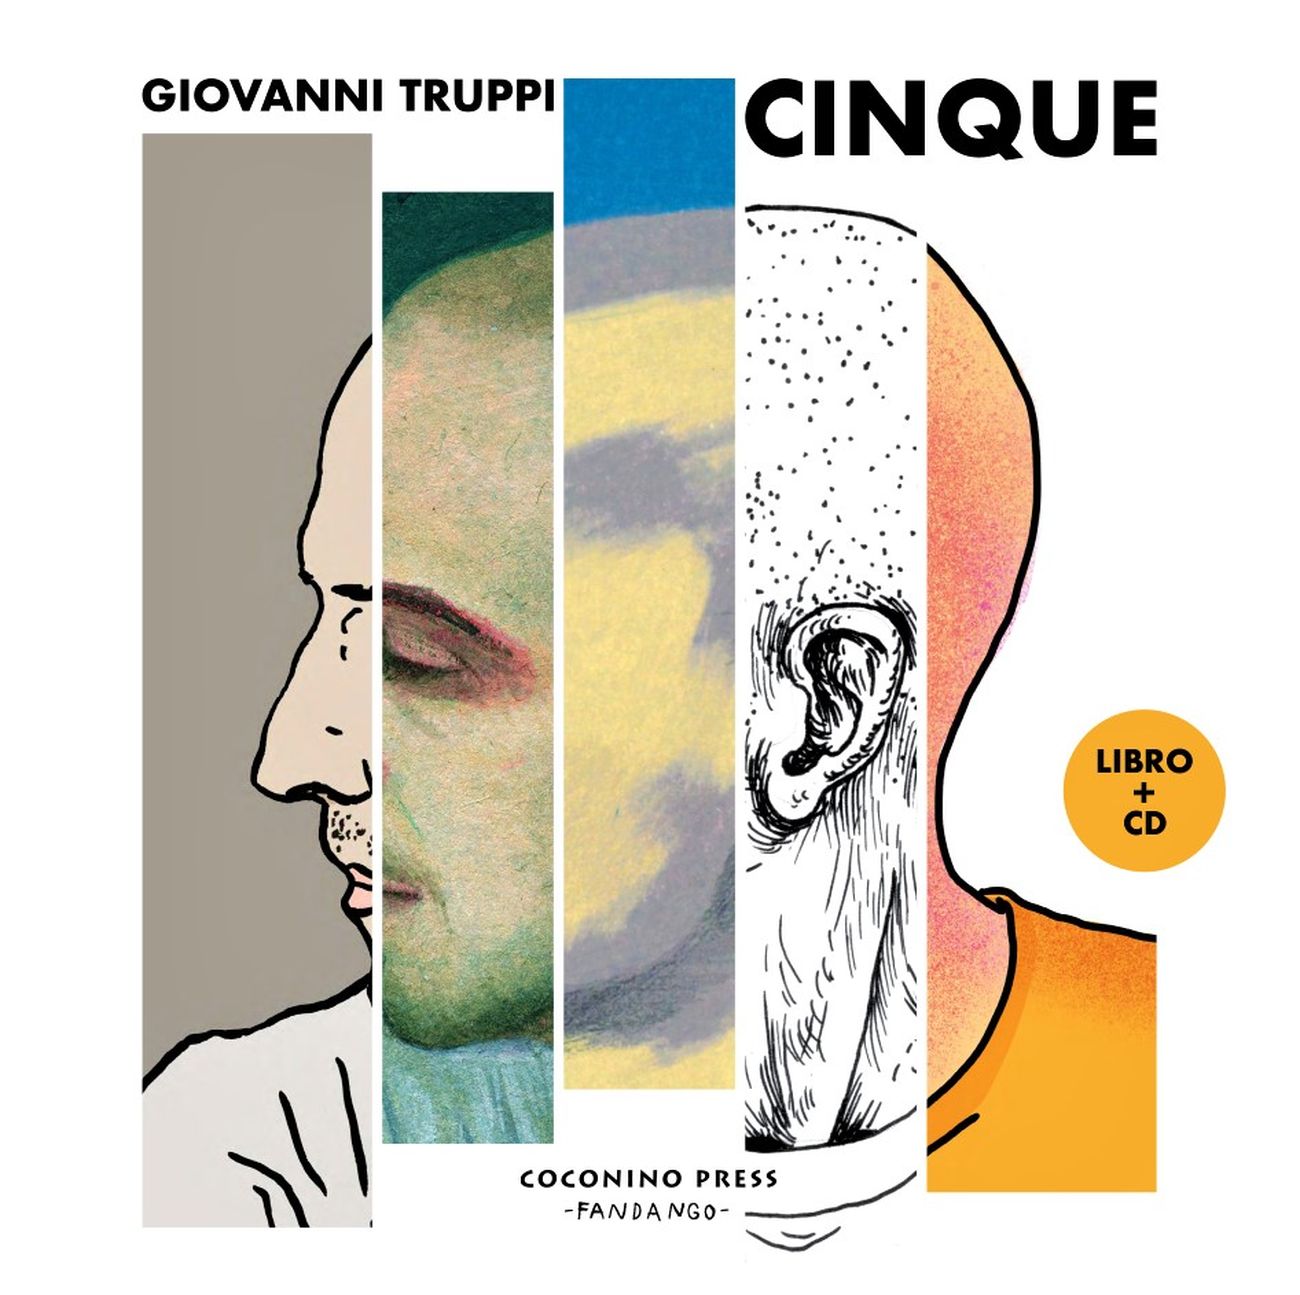 Giovanni Truppi Cinque (Coconino Press Fandango, Roma 2020)